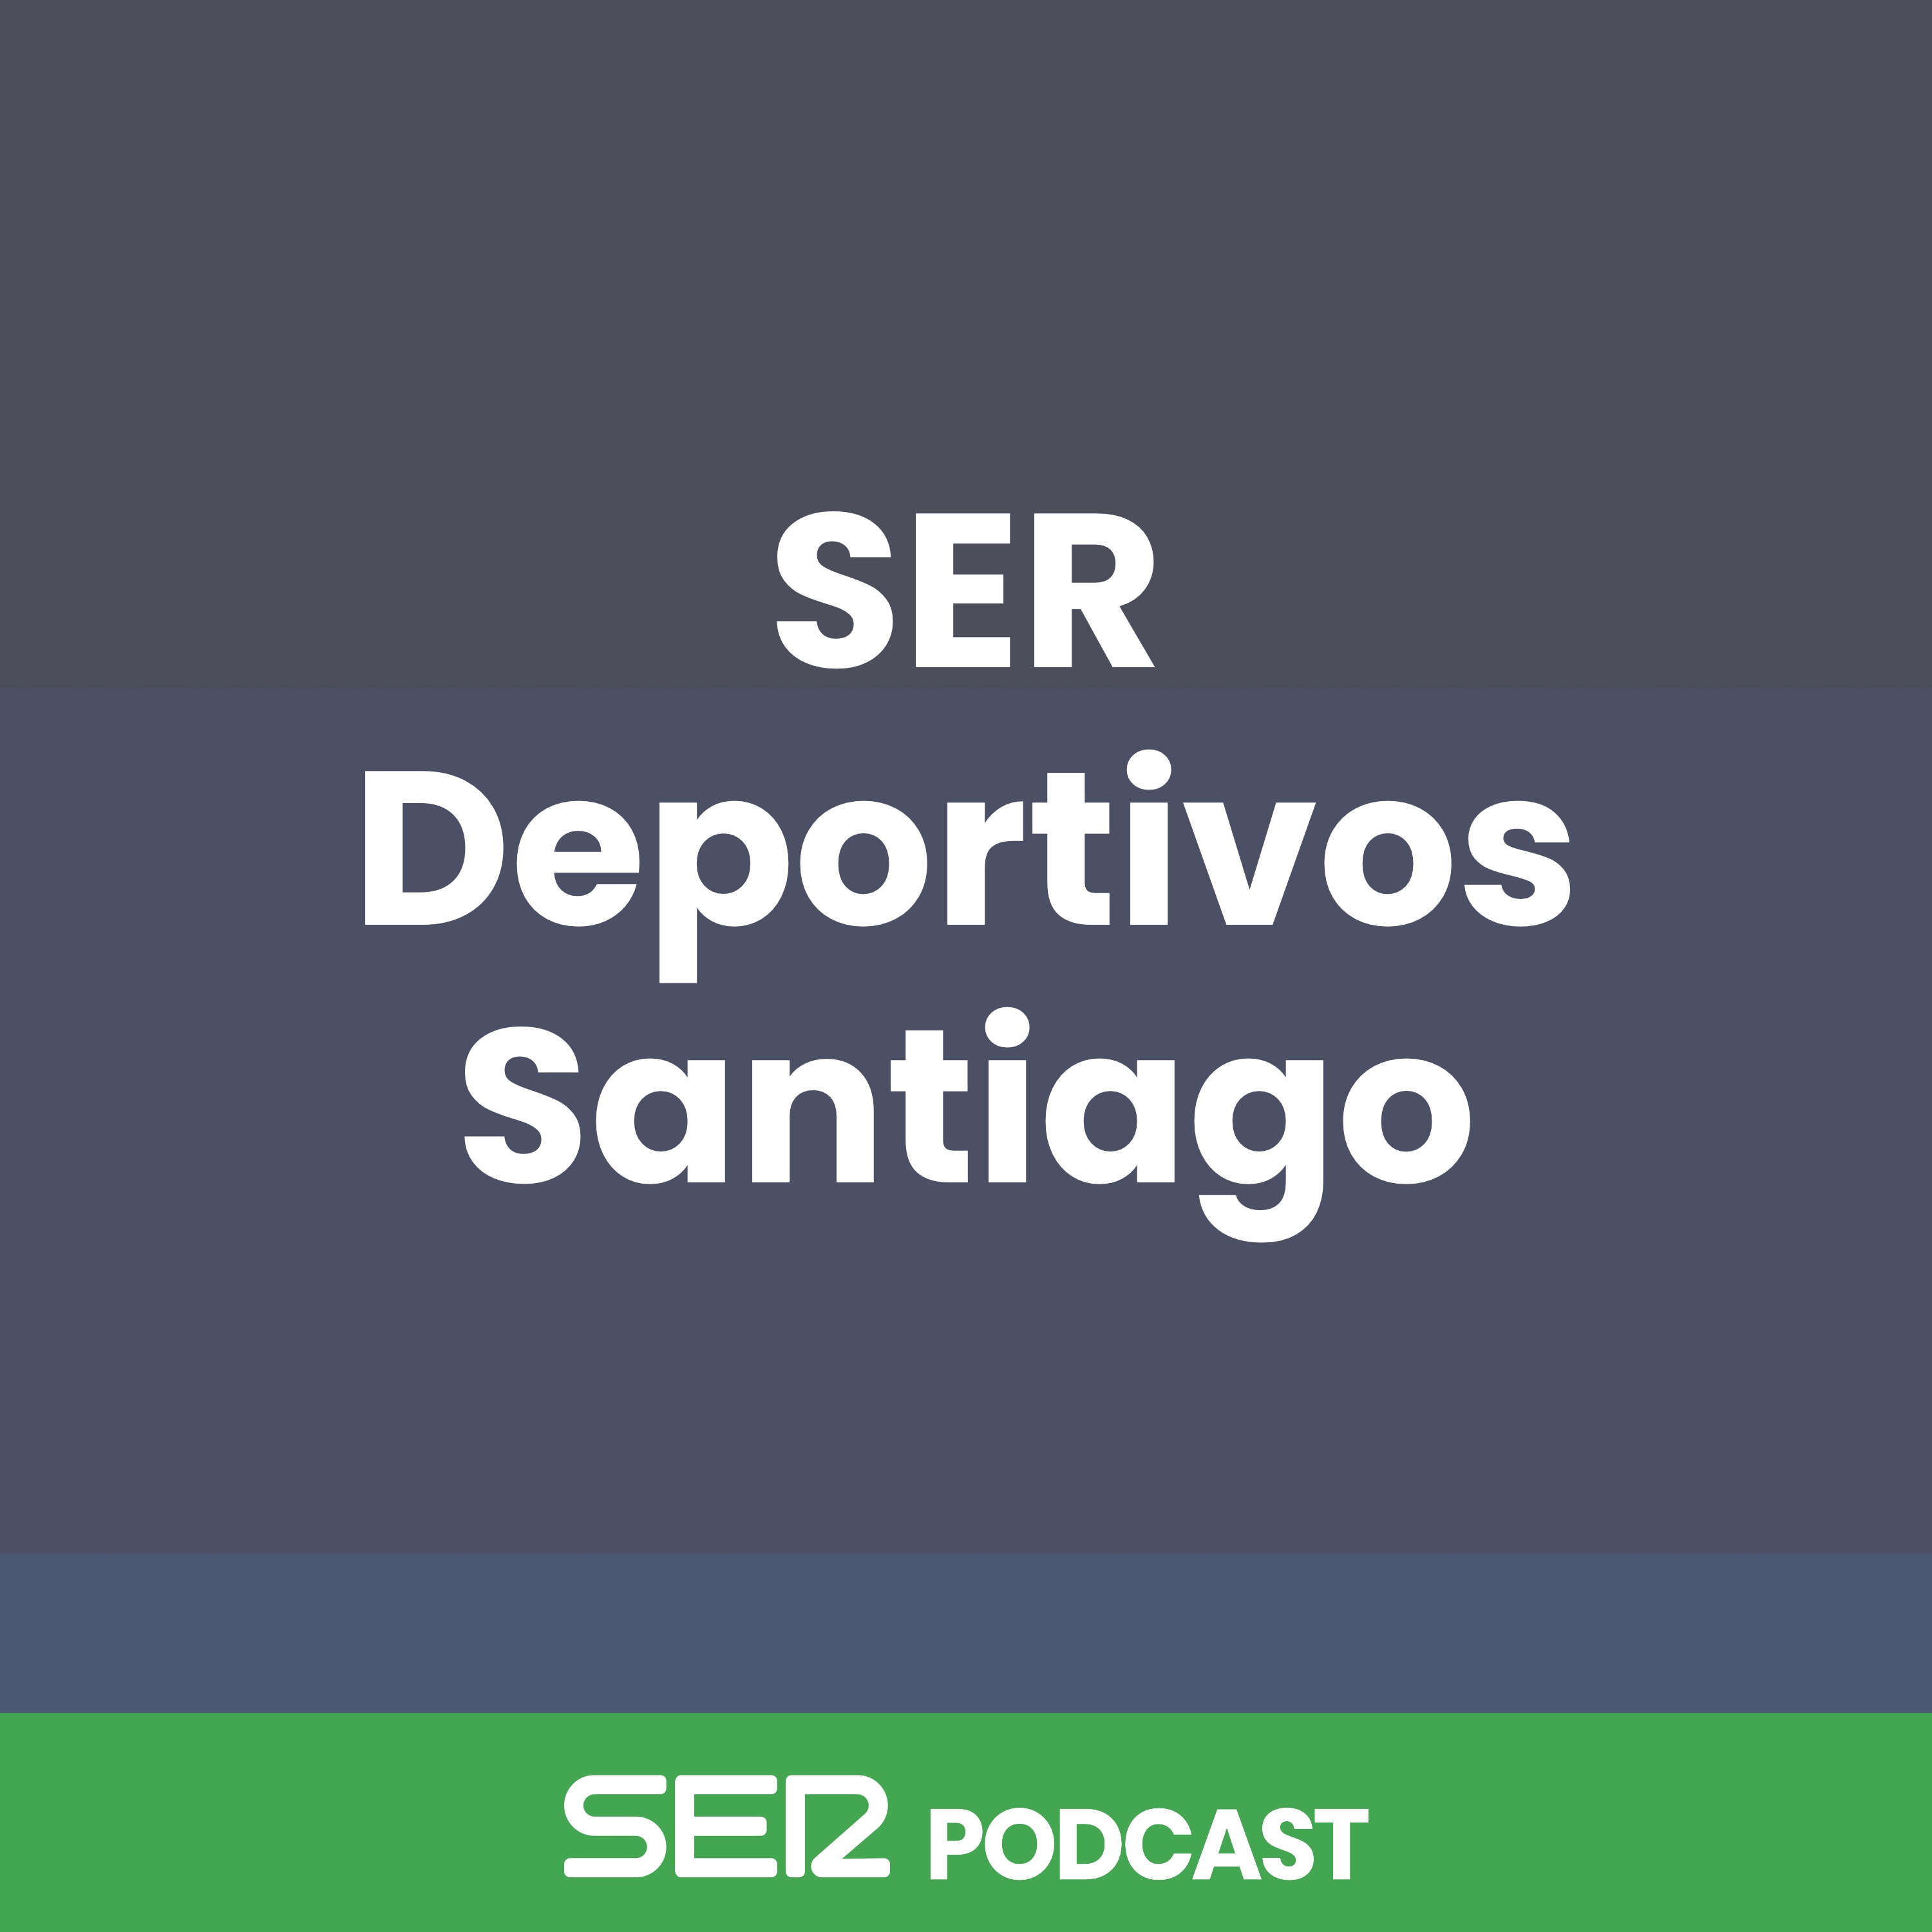 SER Deportivos Santiago